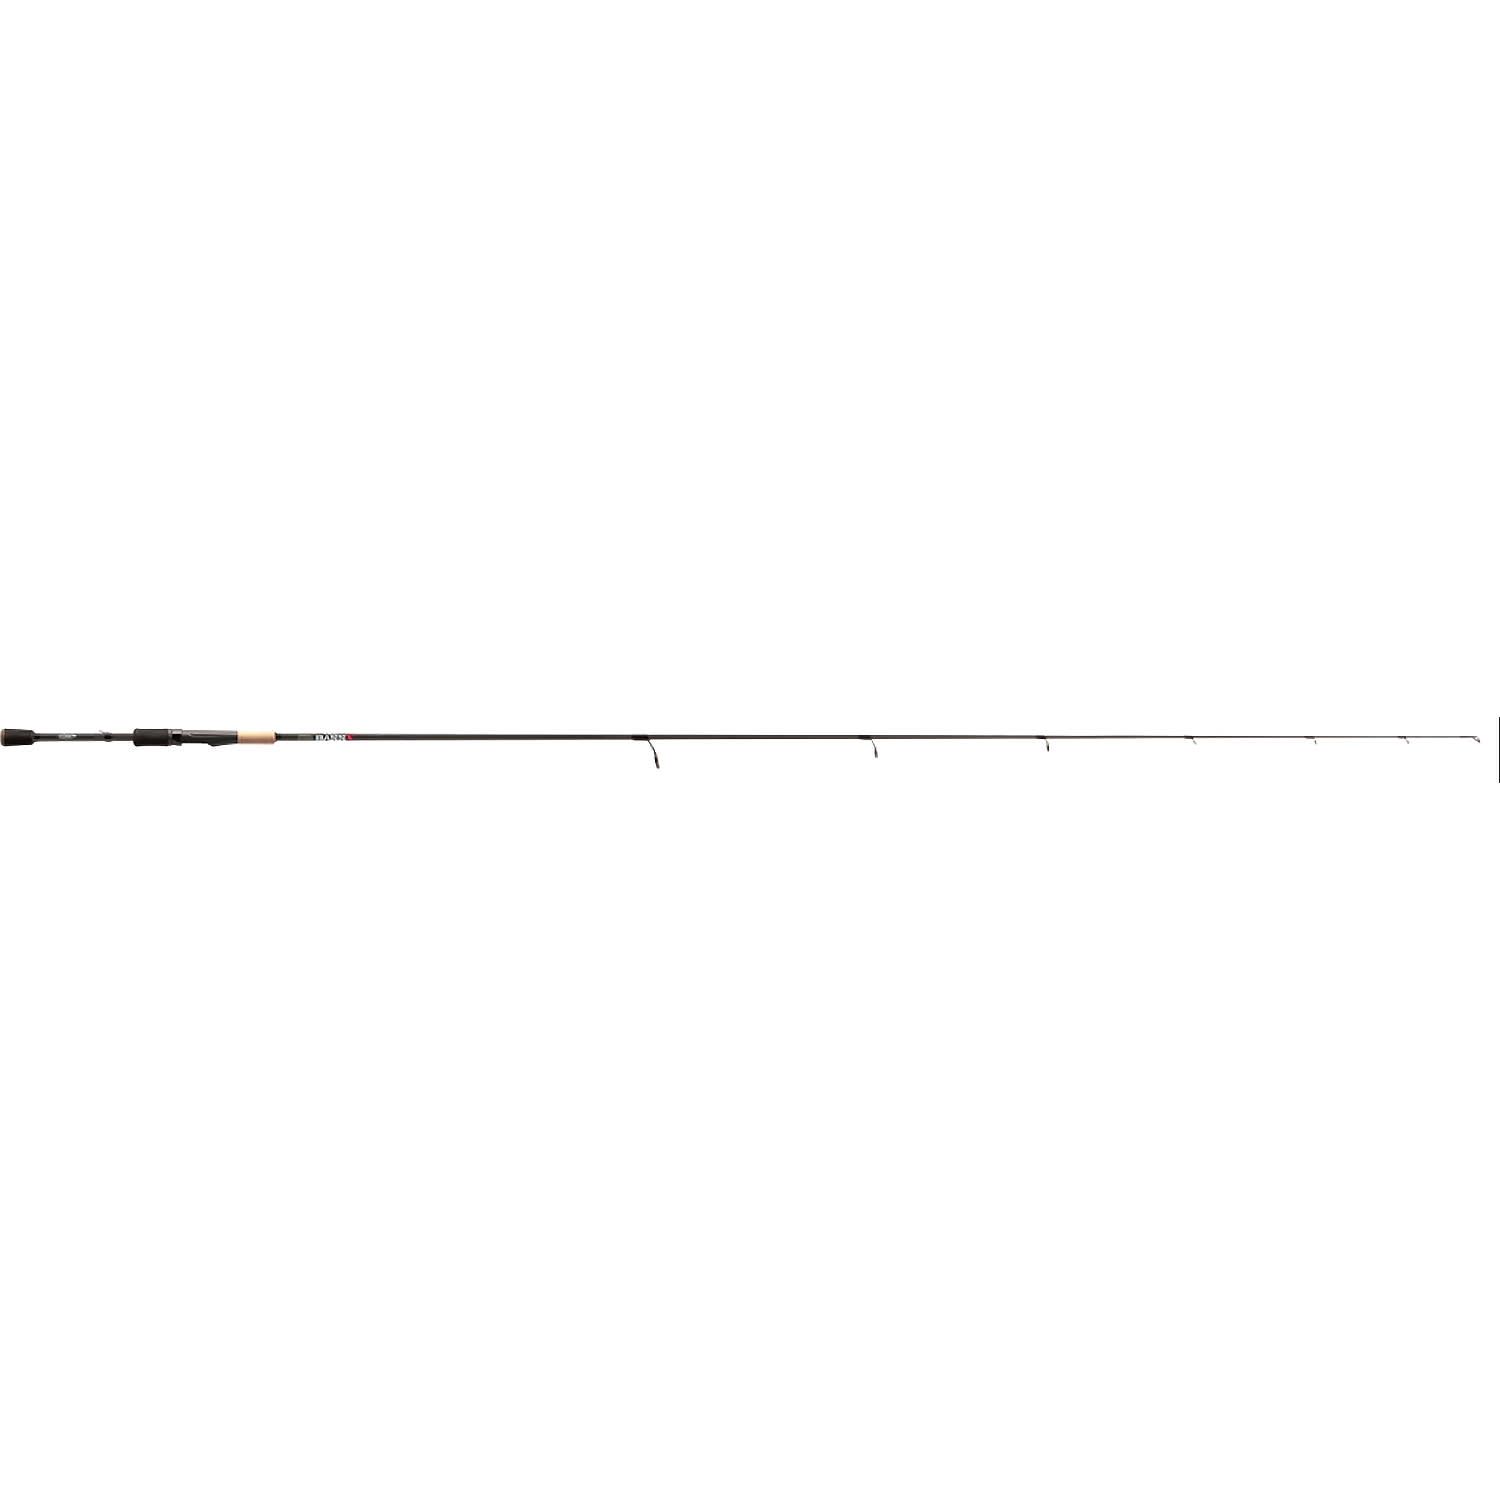 St. Croix® Bass X Spinning Rod